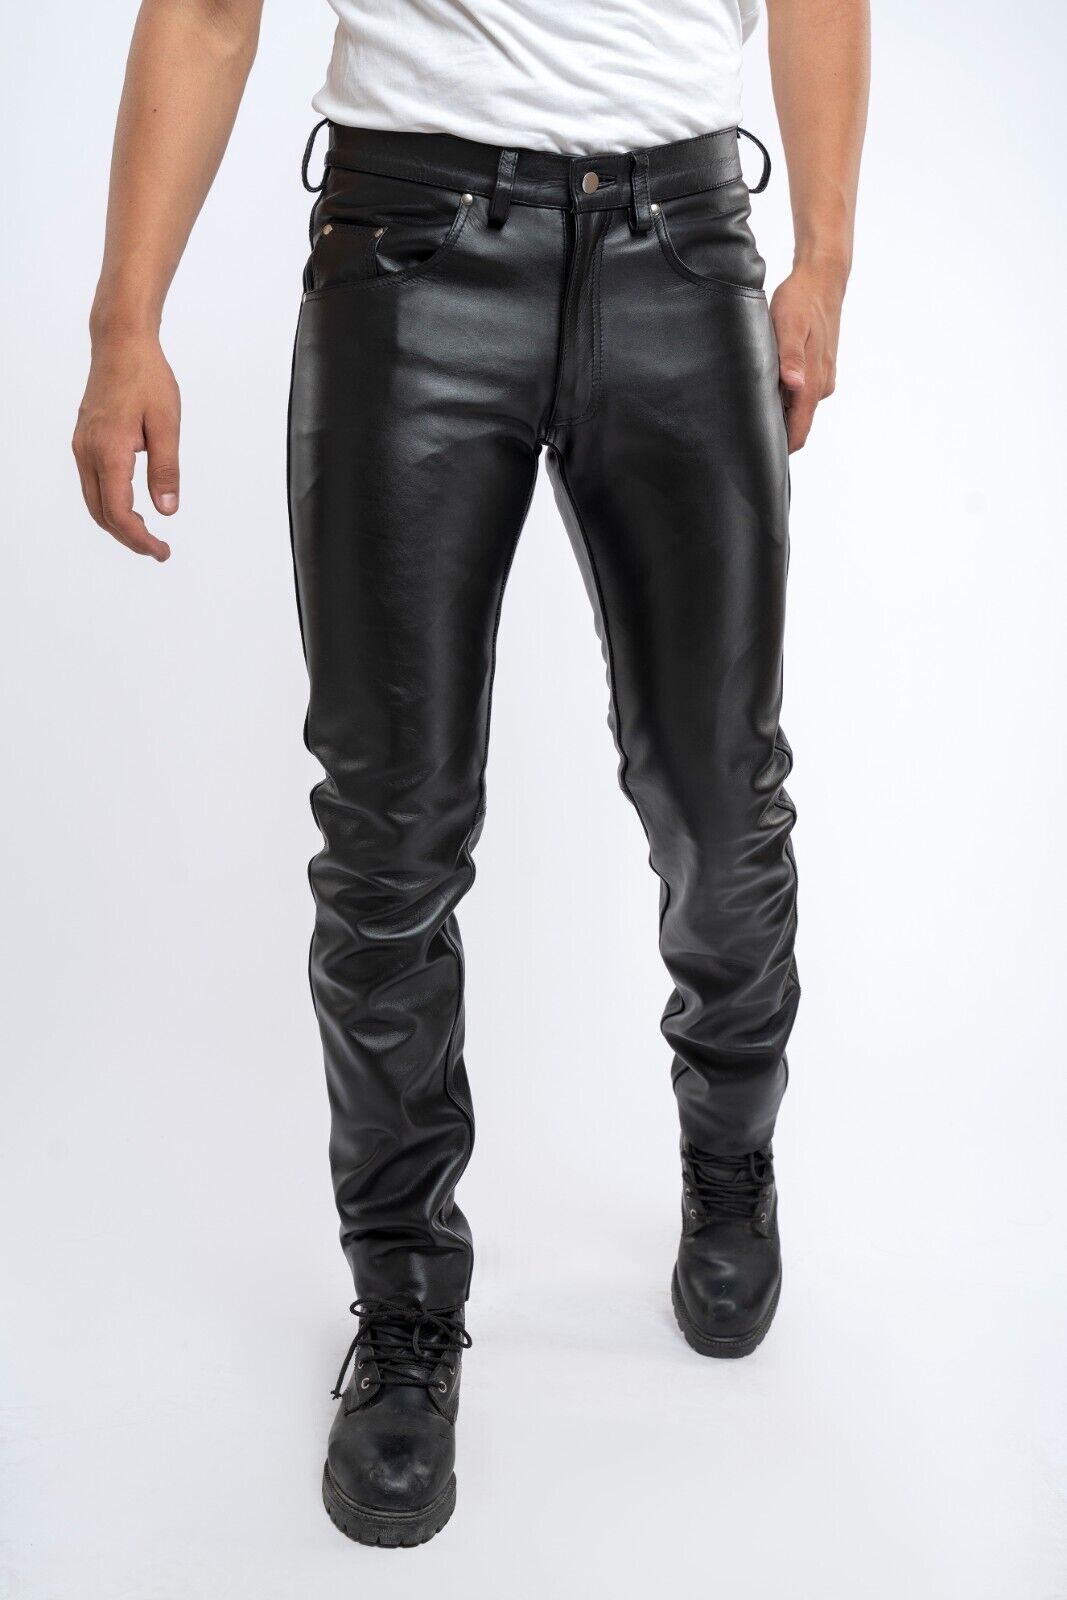 H&M Faux Leather Pants | Leather pants, Faux leather pants, Faux leather  dress